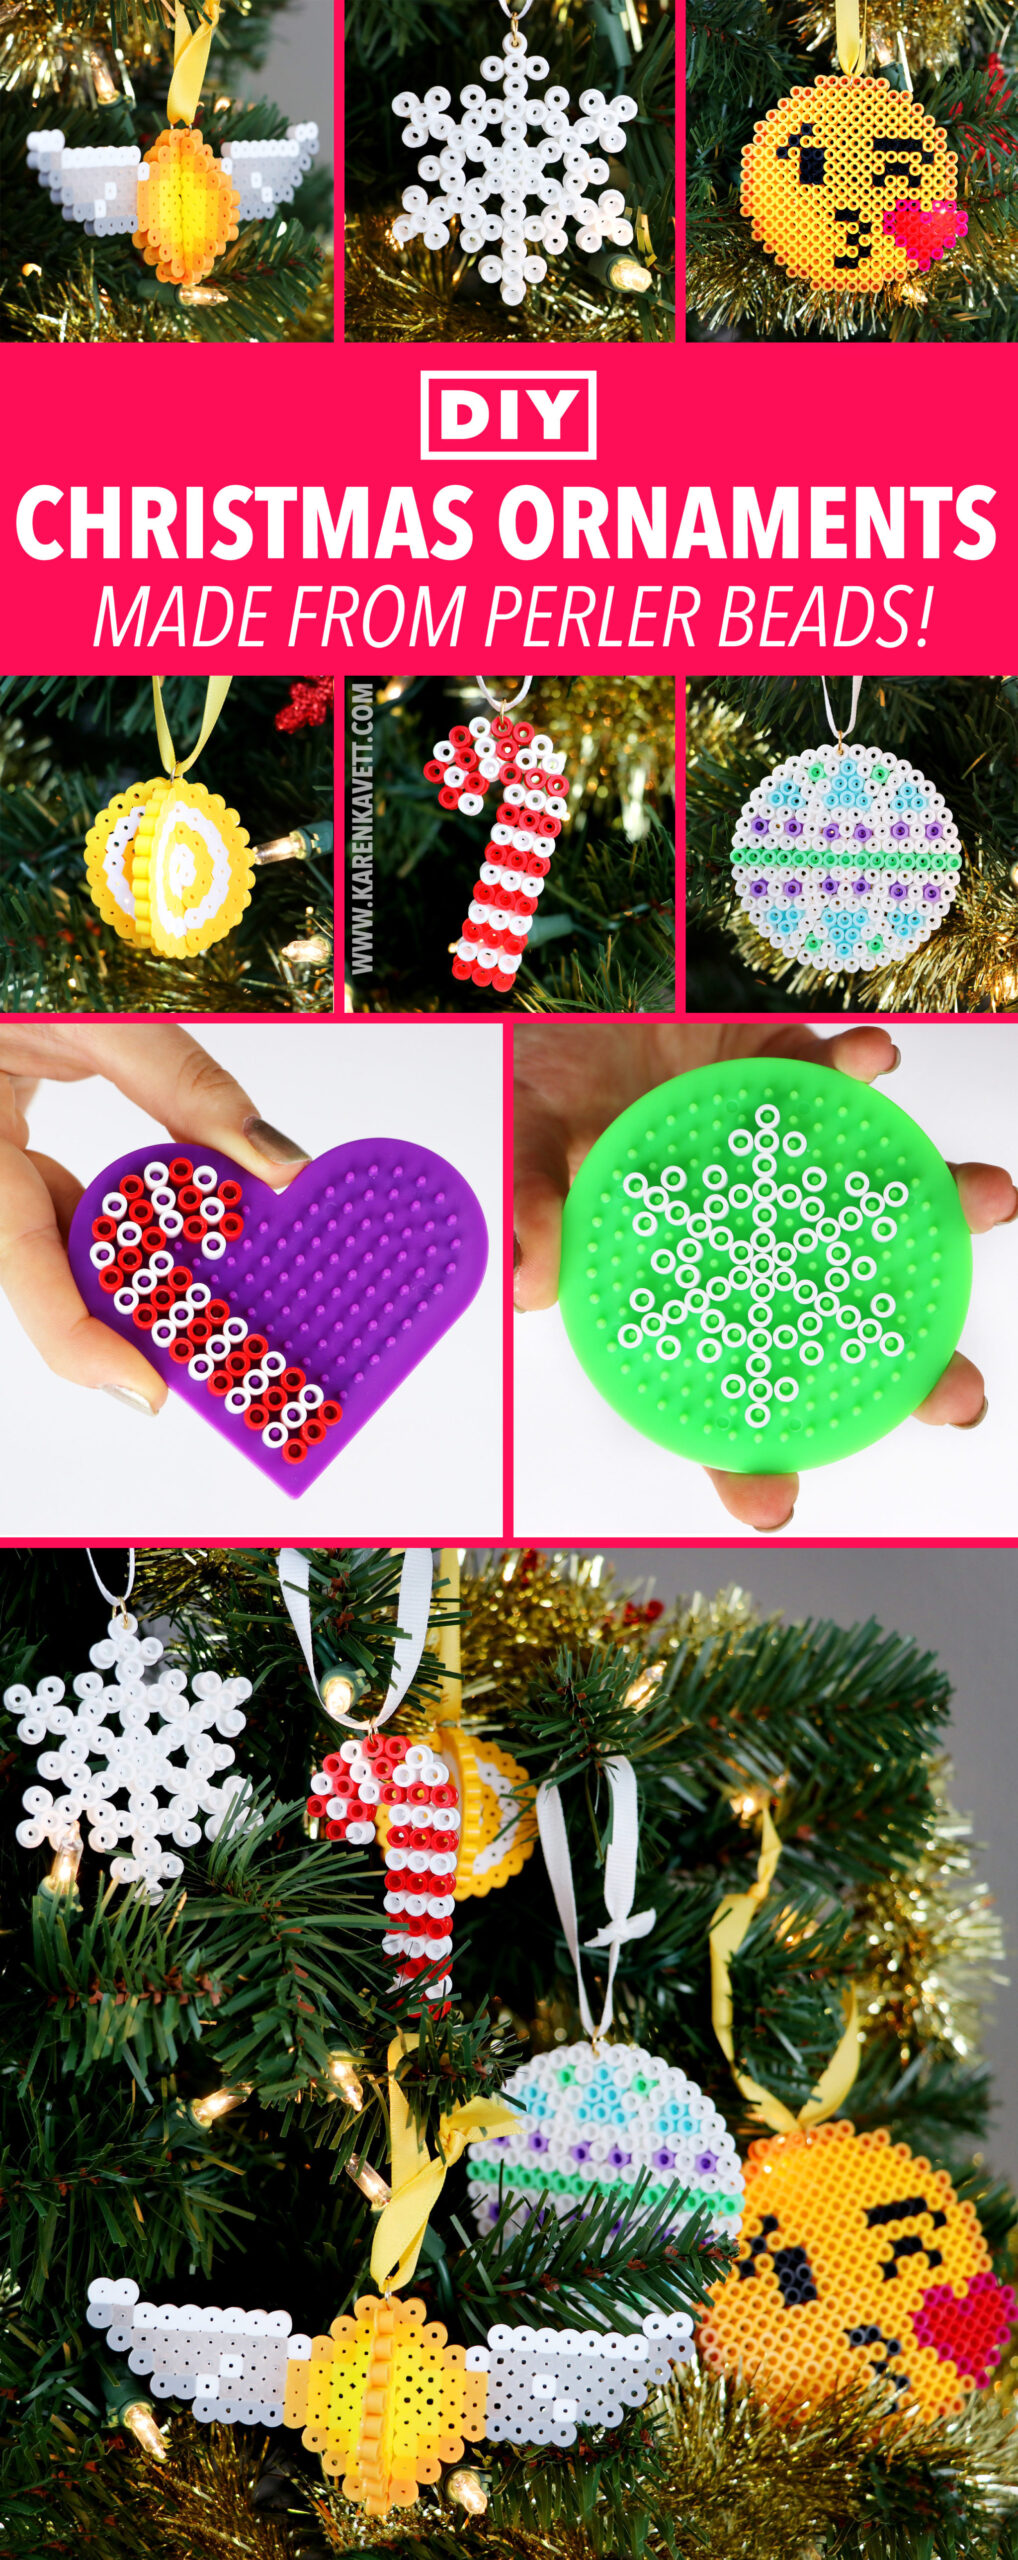 DIY Perler Bead Christmas Ornaments - Karen Kavett